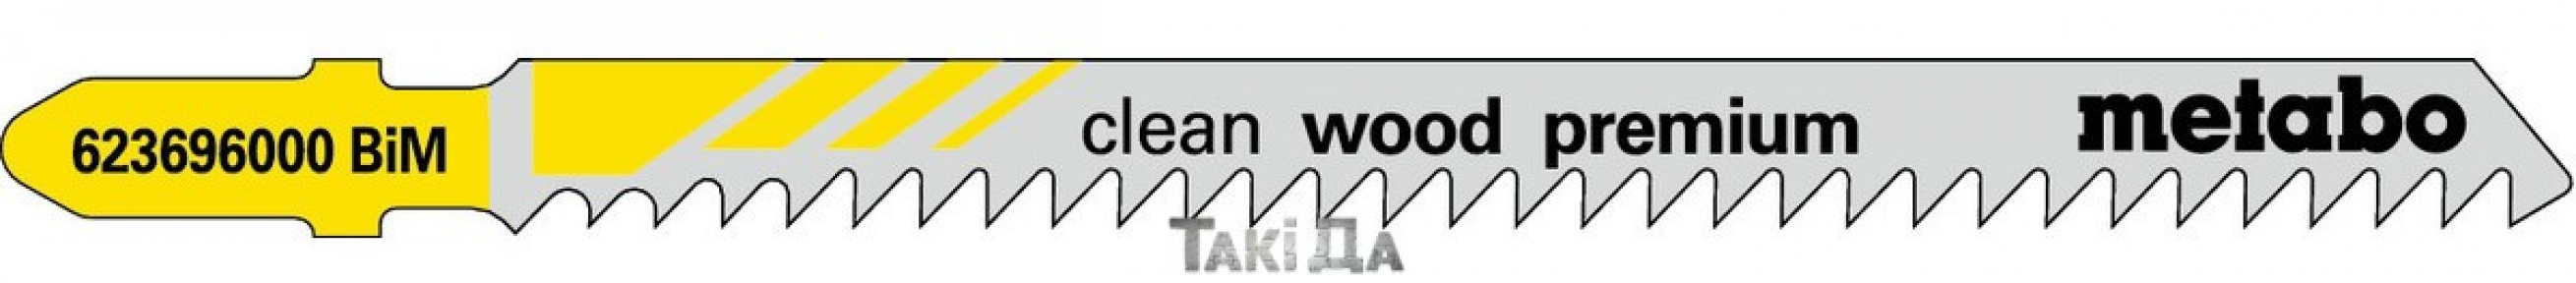 Пильное полотно для лобзика Metabo Clean Wood Premium, 105/3 мм - 5 шт